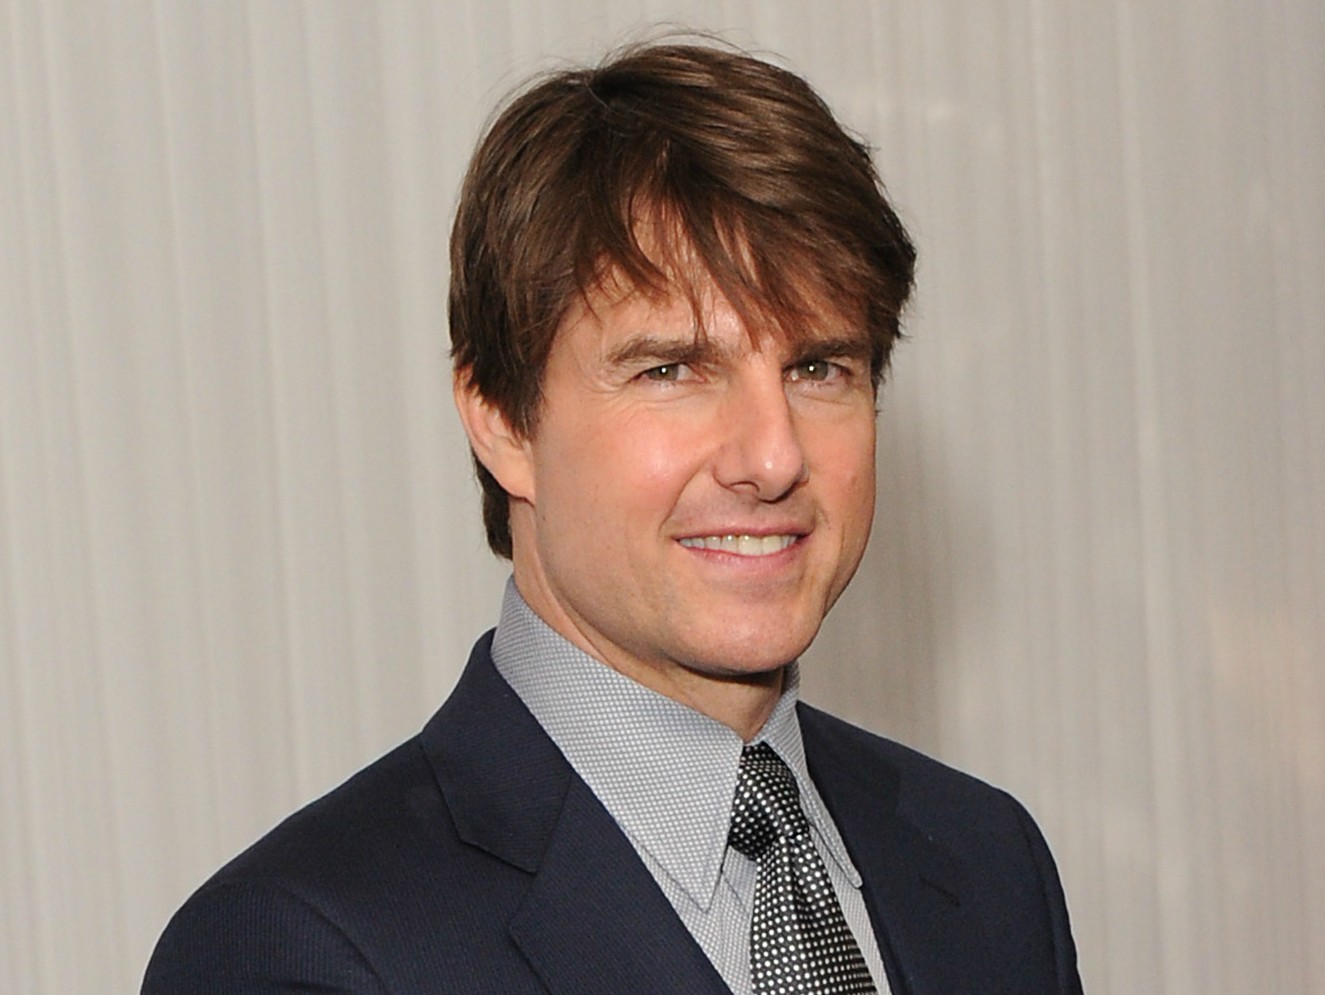 Dizem que Tom Cruise já avisou a quem for preciso: caso o chamem para fazer mais um filme de ação, ele se dá o direito de usar calcinhas o tempo todo. A peça íntima feminina supostamente lhe confere mais desenvoltura para realizar cenas difíceis. (Foto: Getty Images)